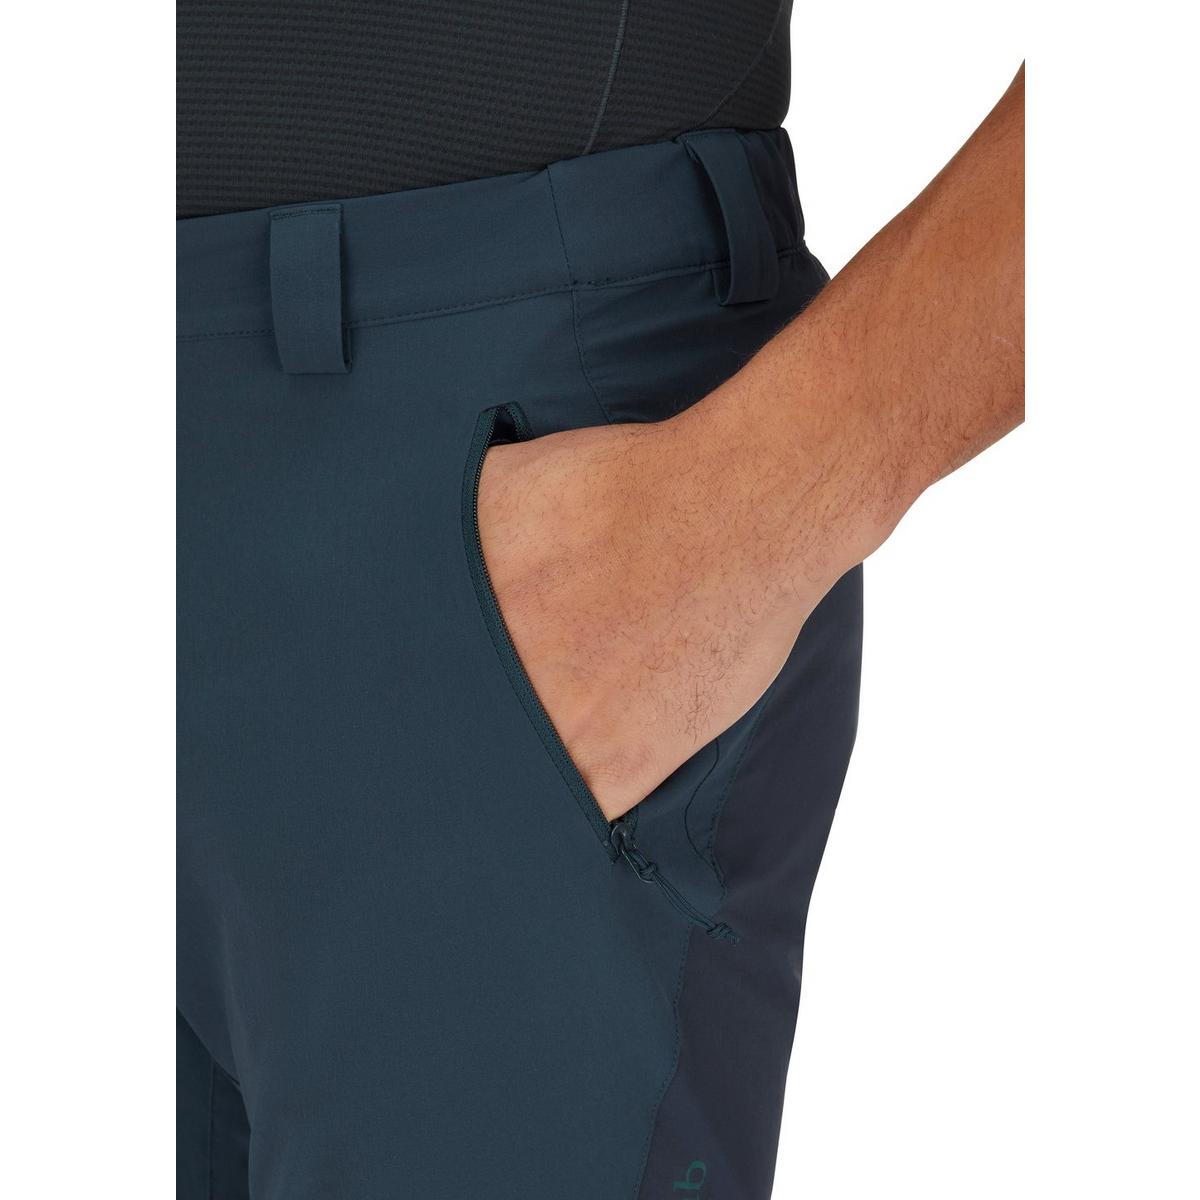 Rab Men's Torque Mountain 8" Shorts - Navy